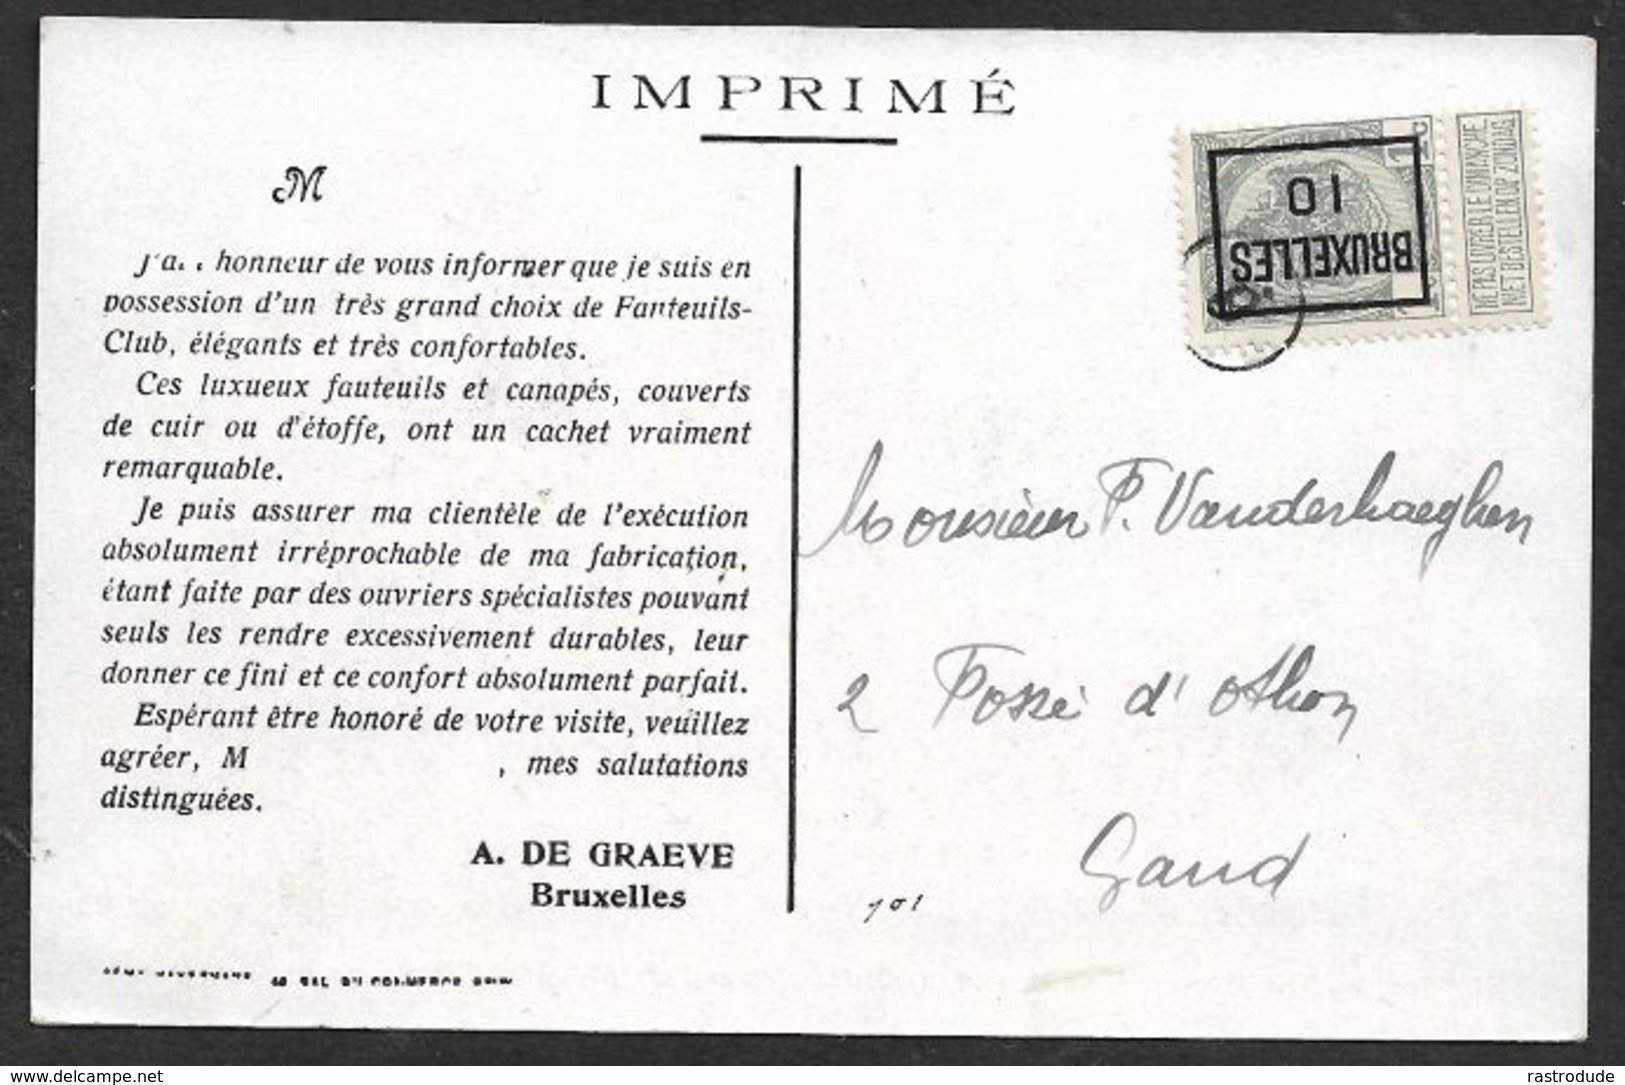 1910 BELGIQUE - IMPRIMÉ PRÉOBLITÉRÉ 1c BRUXELLES  A GAND  - LUXUEUX FAUTEUILS ET CANAPÉS - Rollenmarken 1900-09